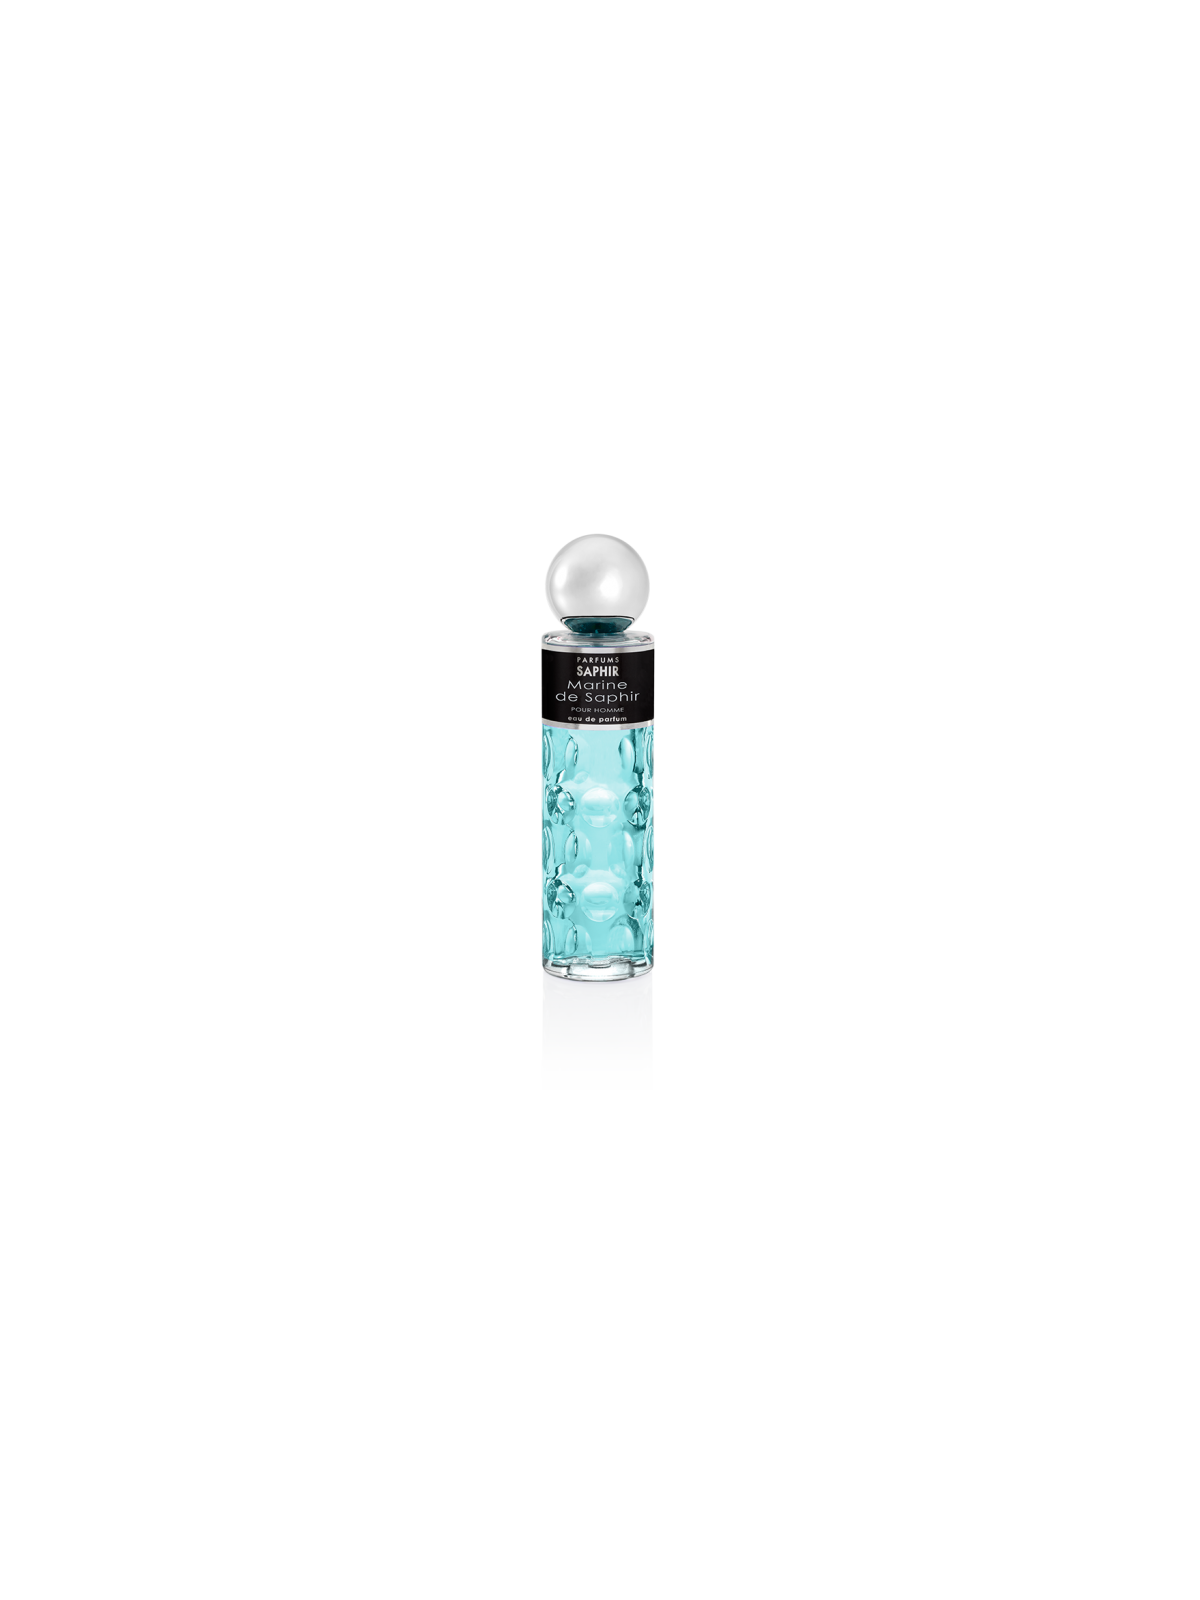 Comprar Perfume Saphir Marine 200ML. en Perfumes para hombre por sólo 12,90 € o un precio específico de 12,90 € en Thalie Care